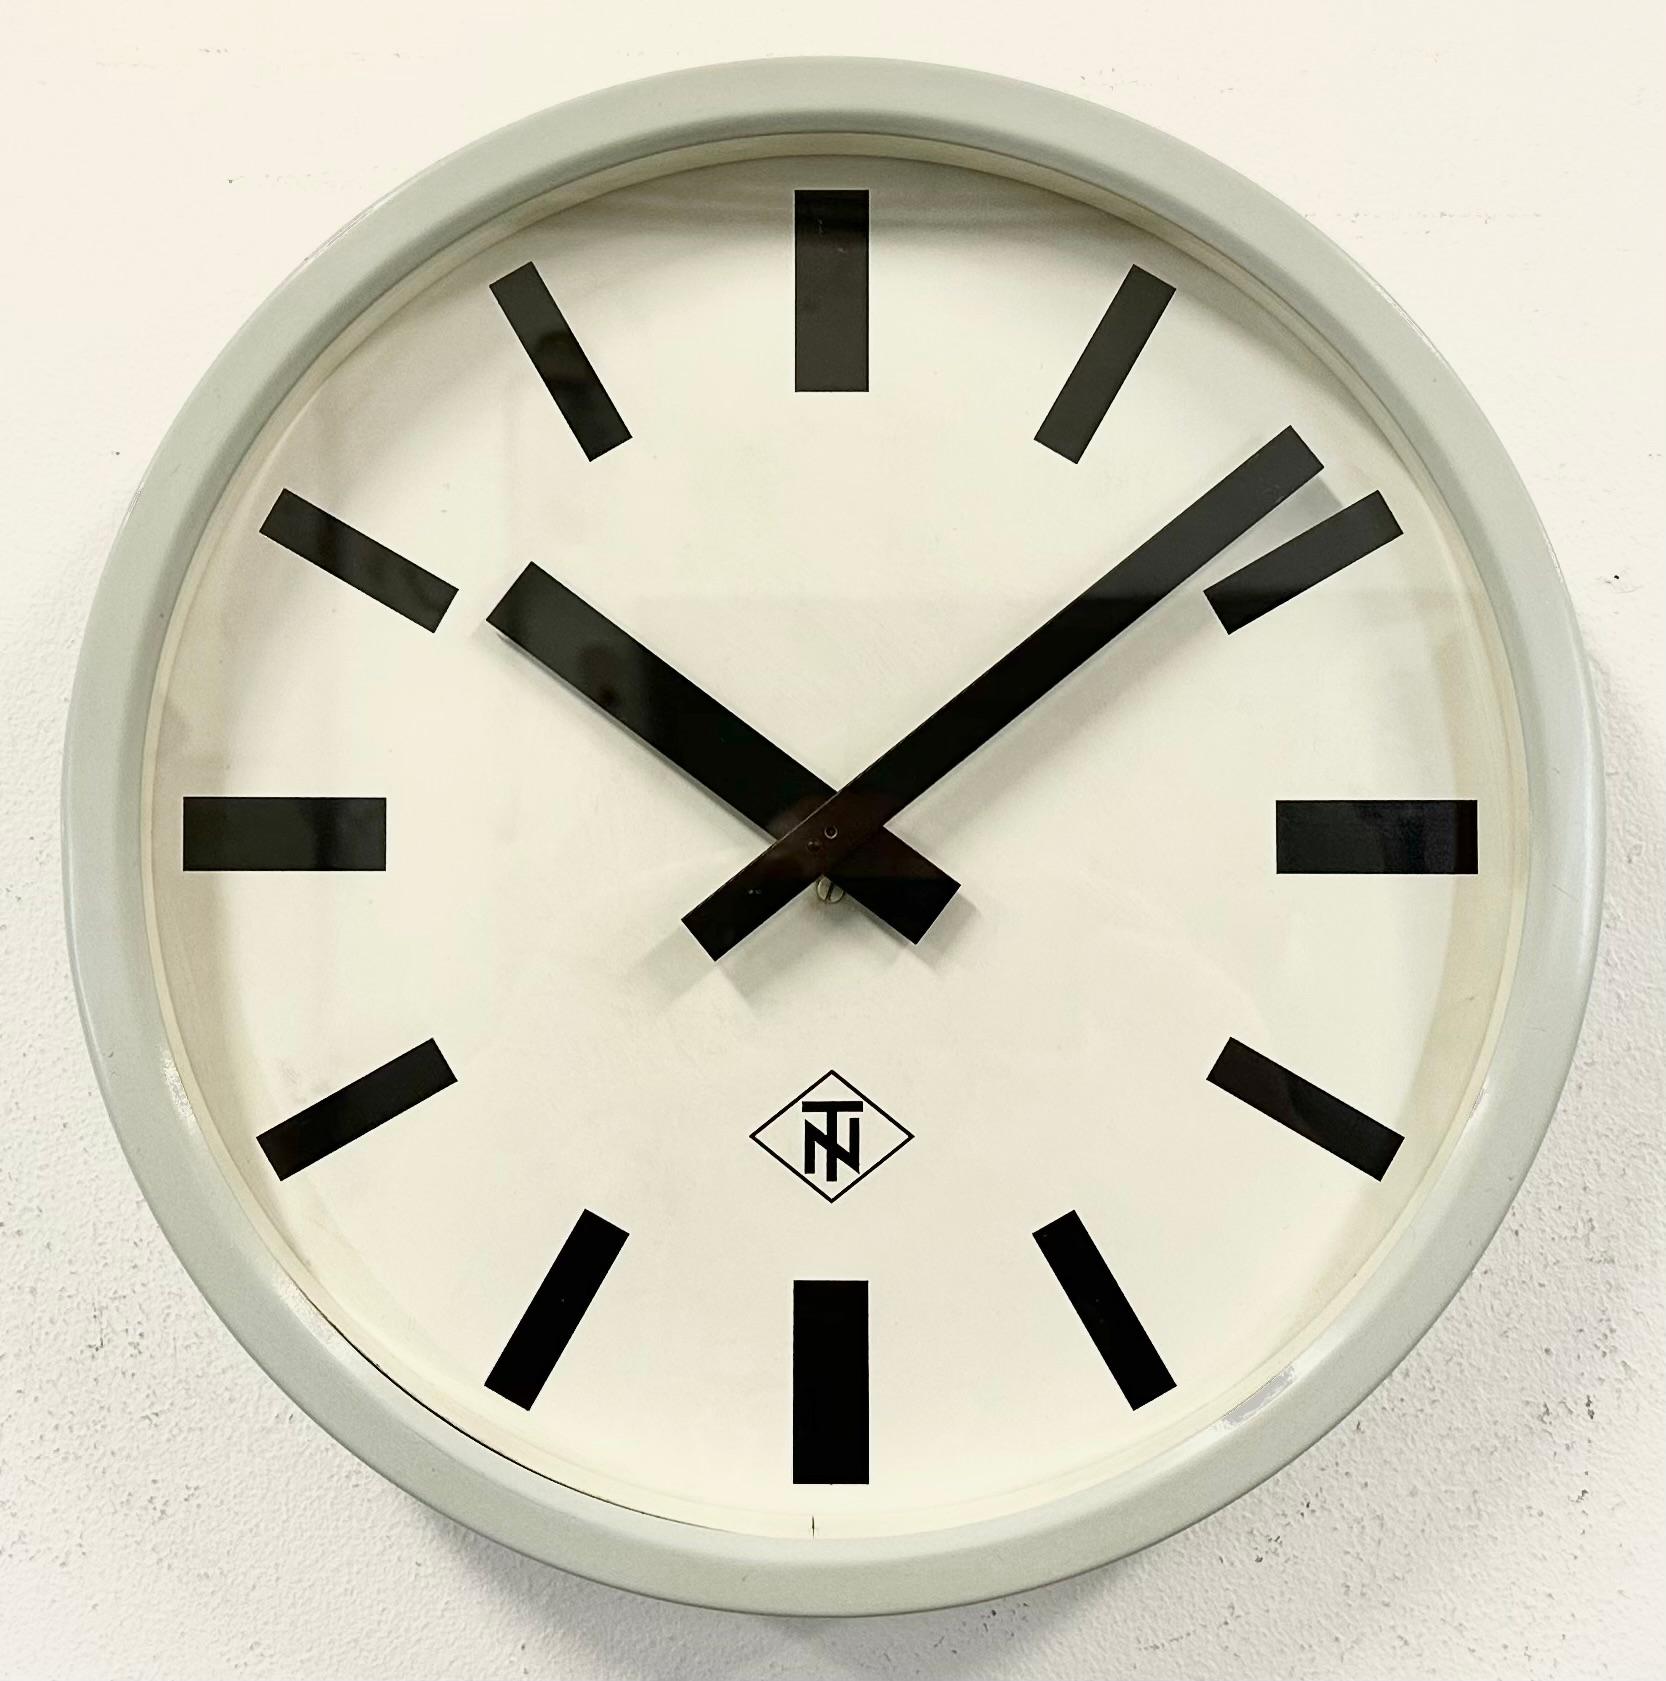 tn clock